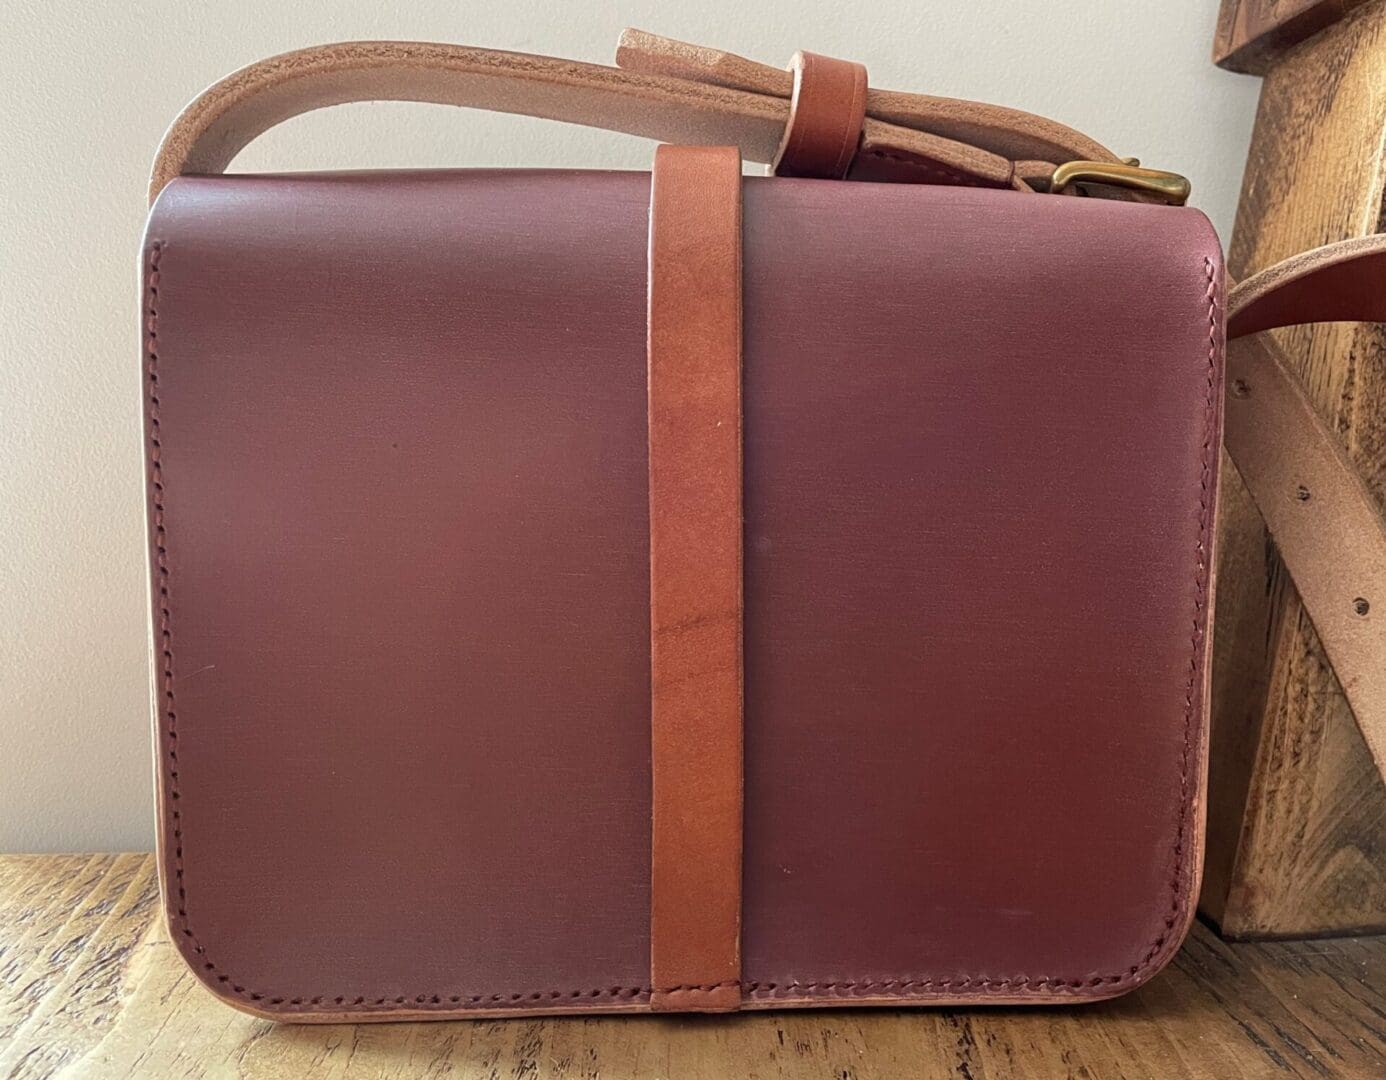 Anastasia shoulder bag in English leather showing back detail